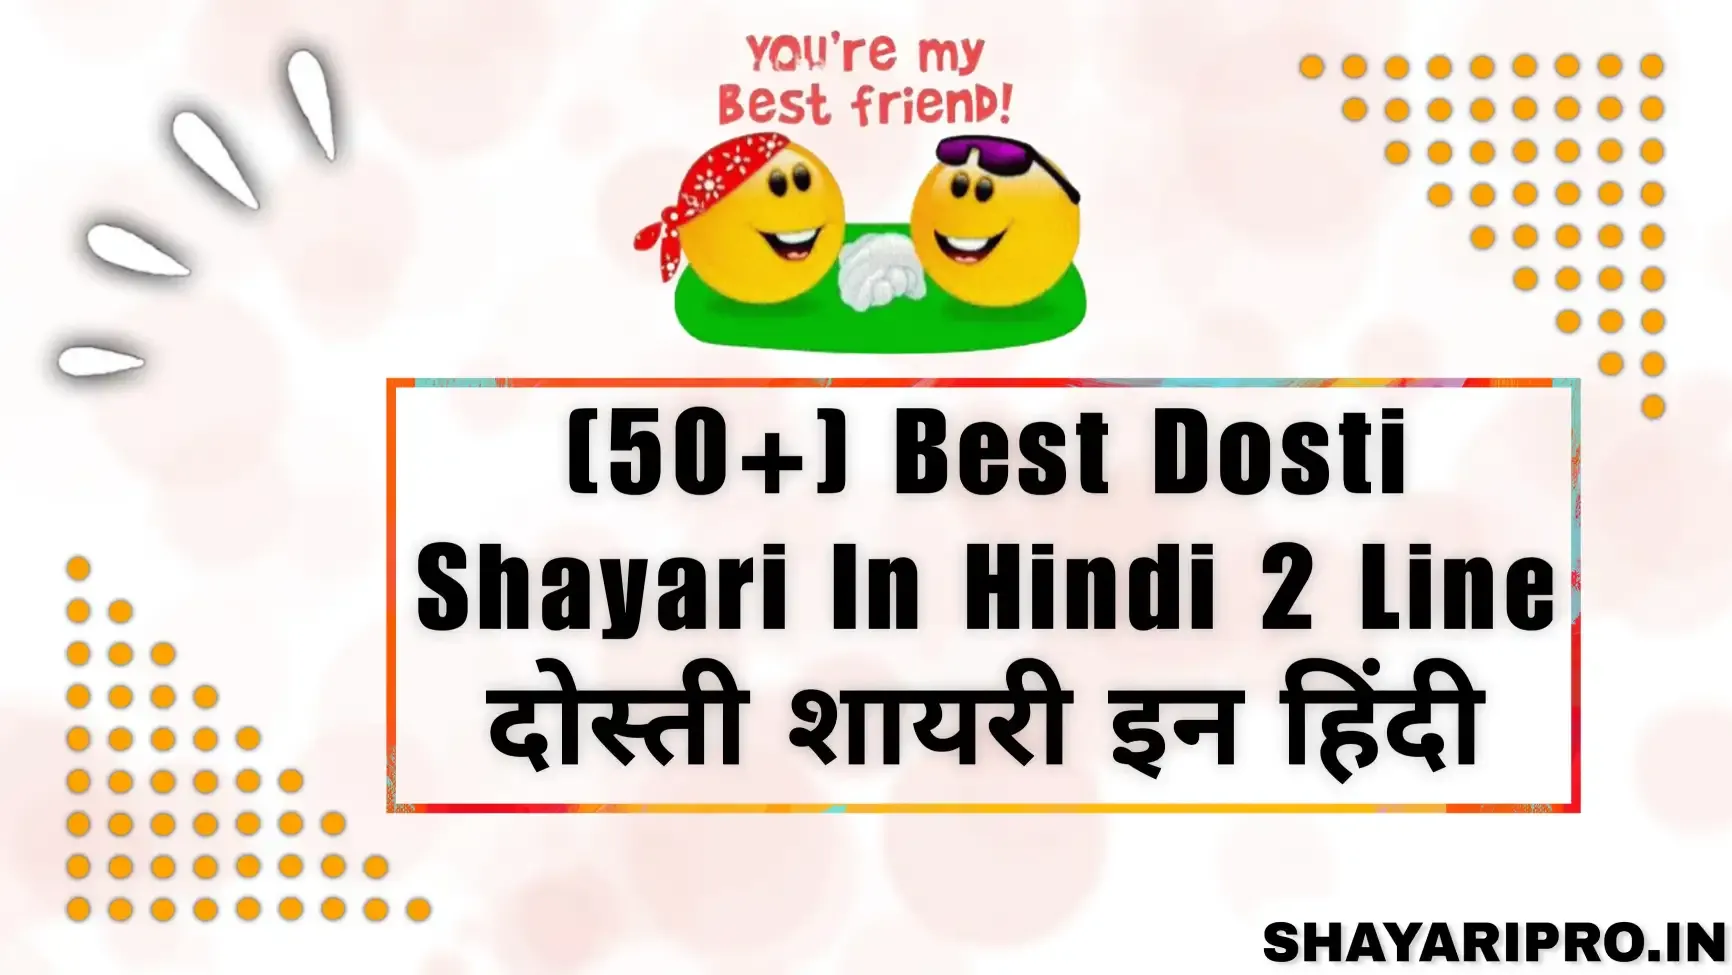 Best Dosti Shayari In Hindi 2 Line